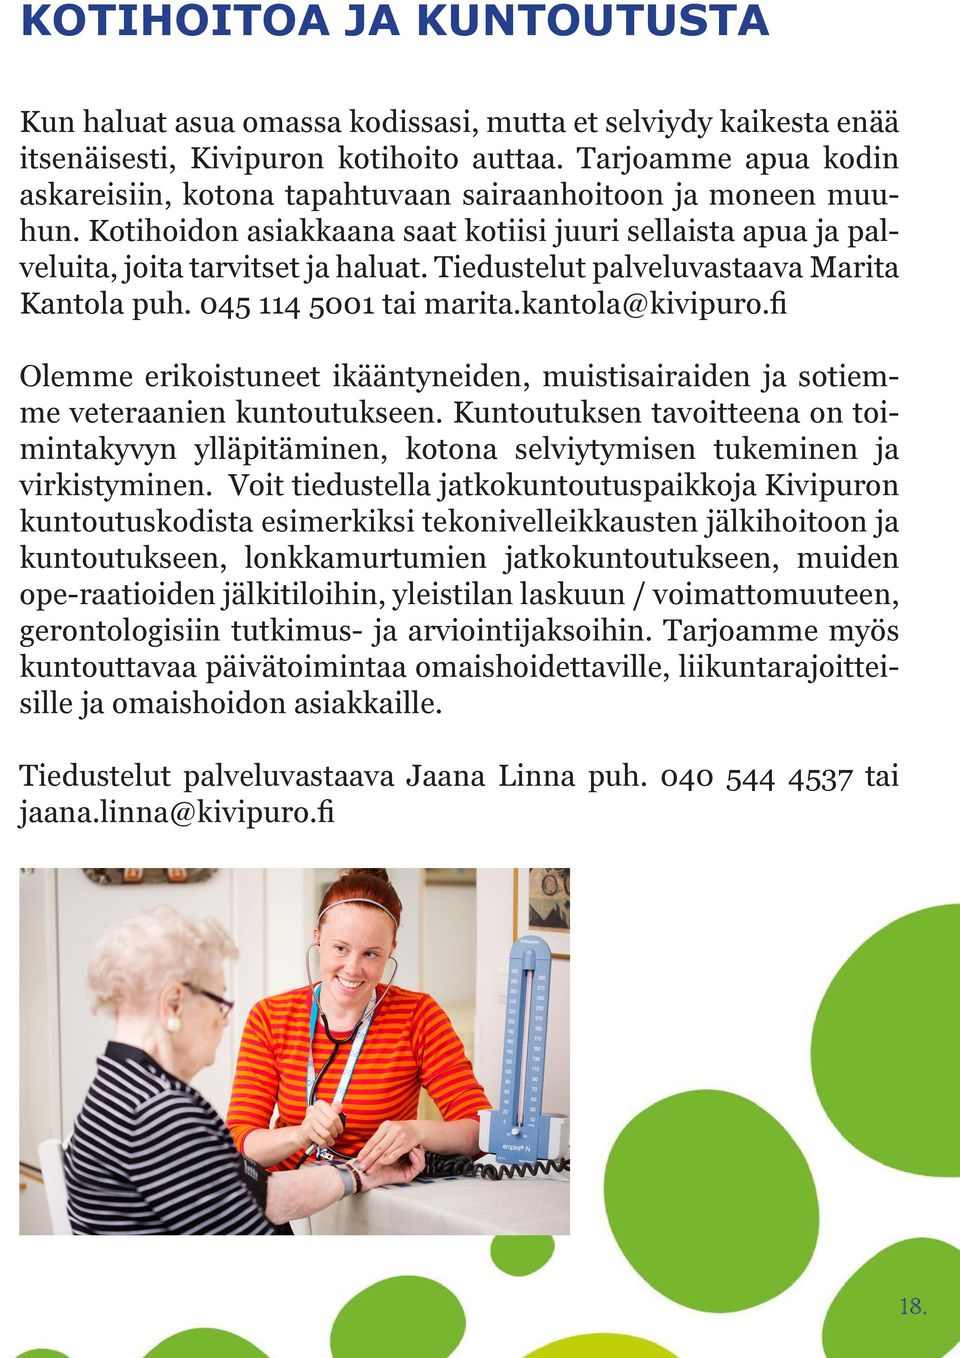 Tiedustelut palveluvastaava Marita Kantola puh. 045 114 5001 tai marita.kantola@kivipuro.fi Olemme erikoistuneet ikääntyneiden, muistisairaiden ja sotiemme veteraanien kuntoutukseen.